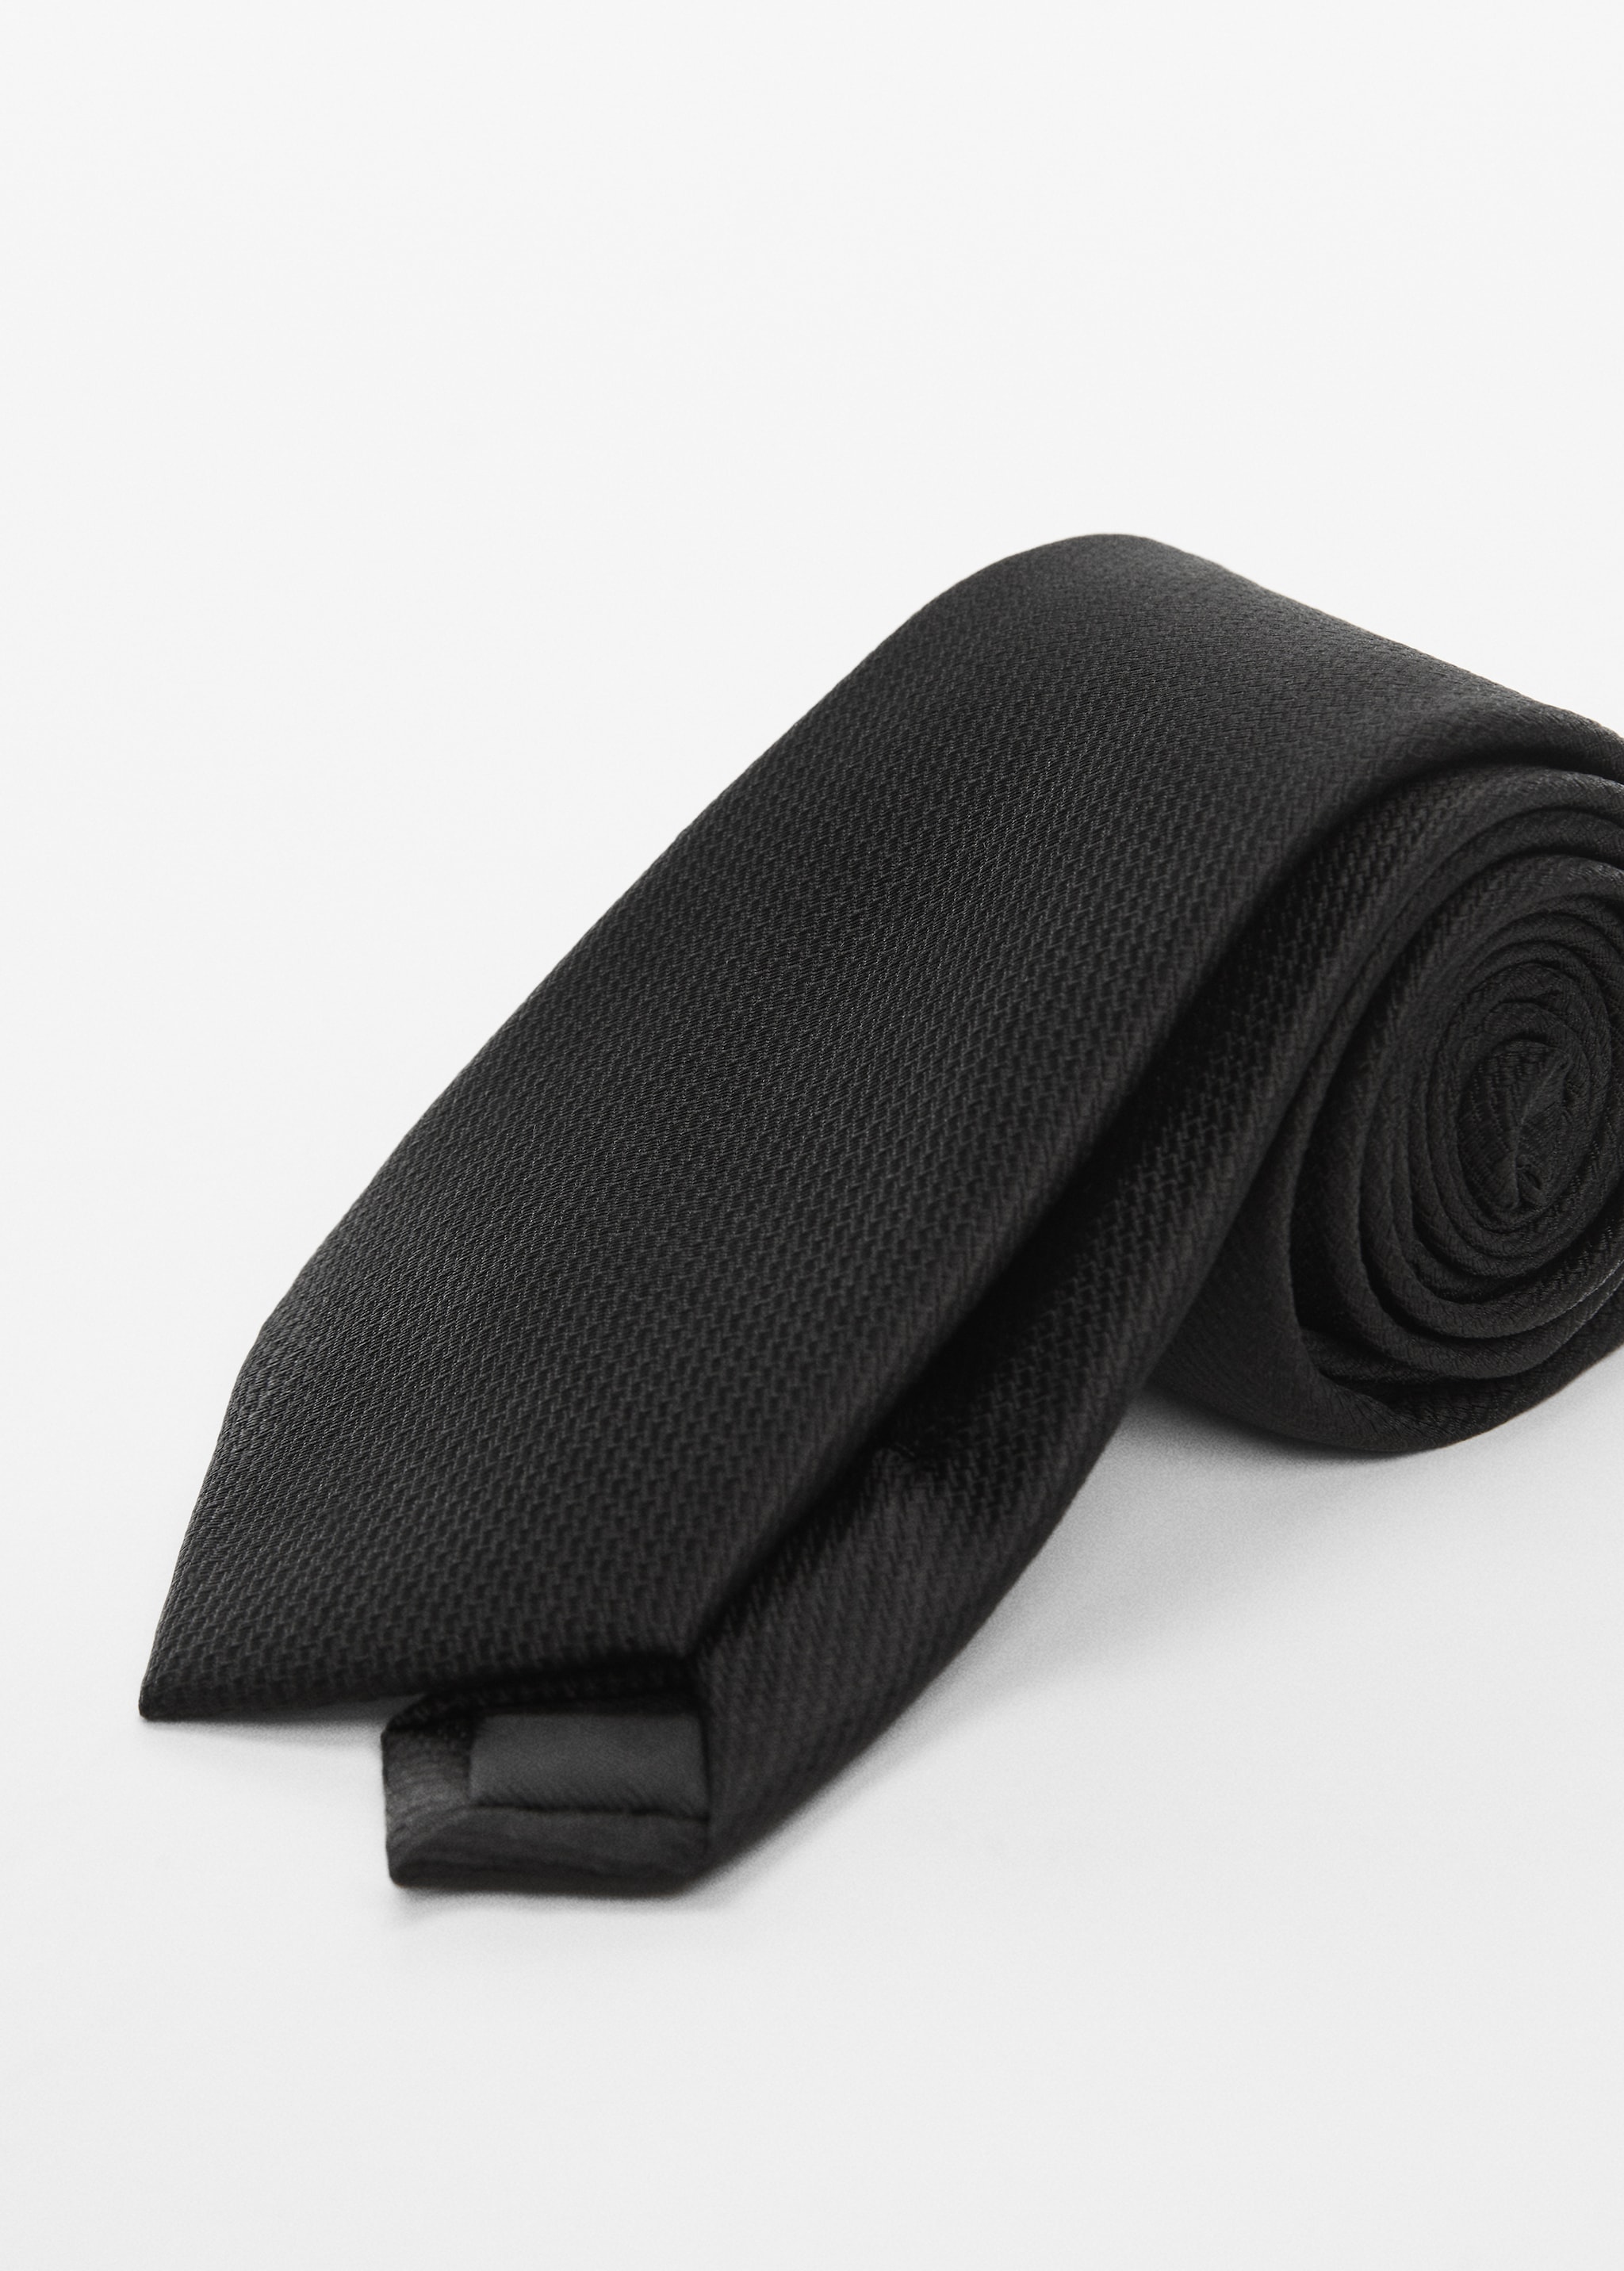 ربطة عنق منظمة مقاومة للتجعد - تفاصيل المنتج 1